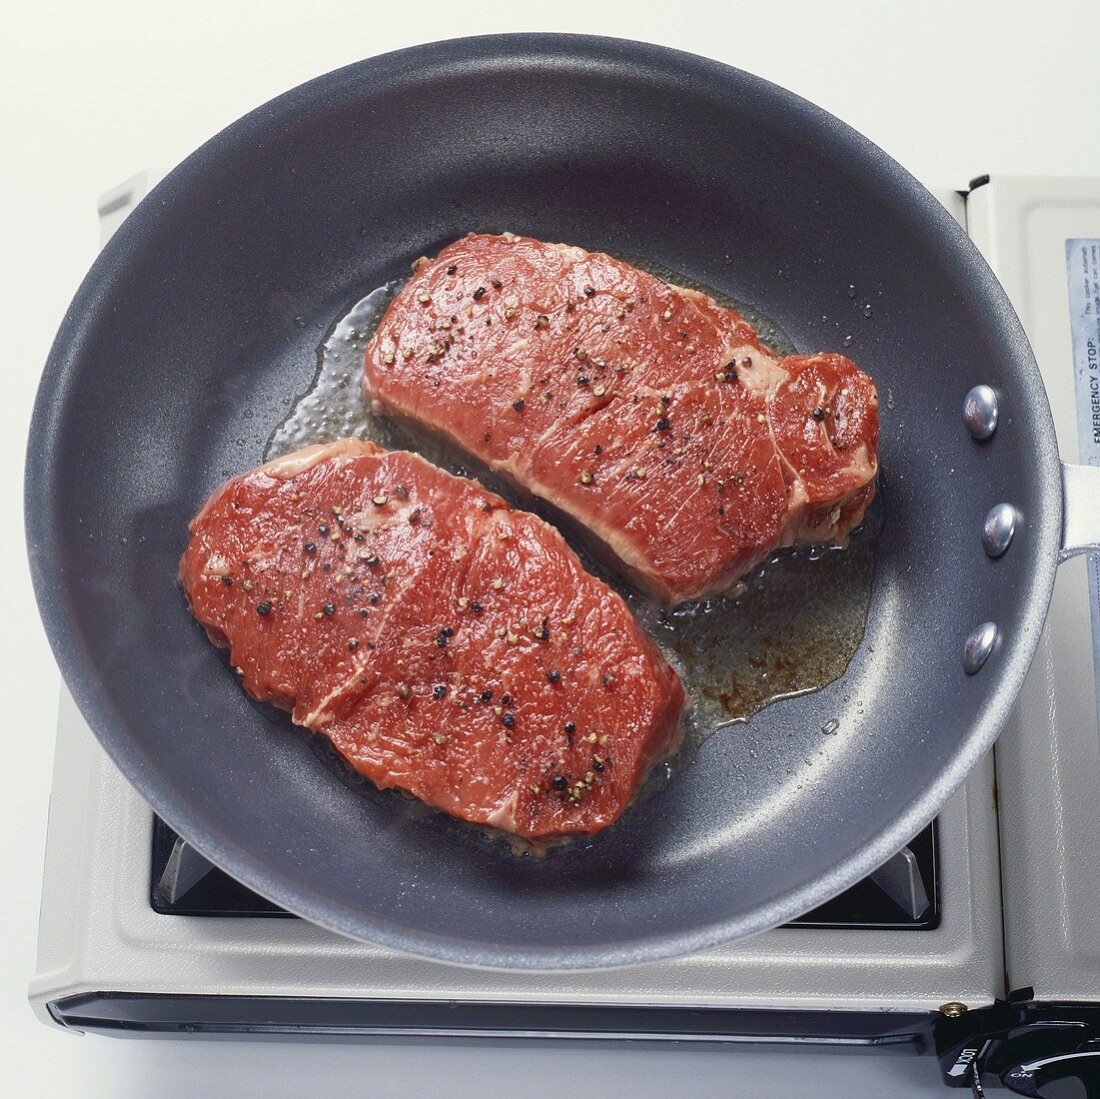 Pan Frying Steak in Skillet